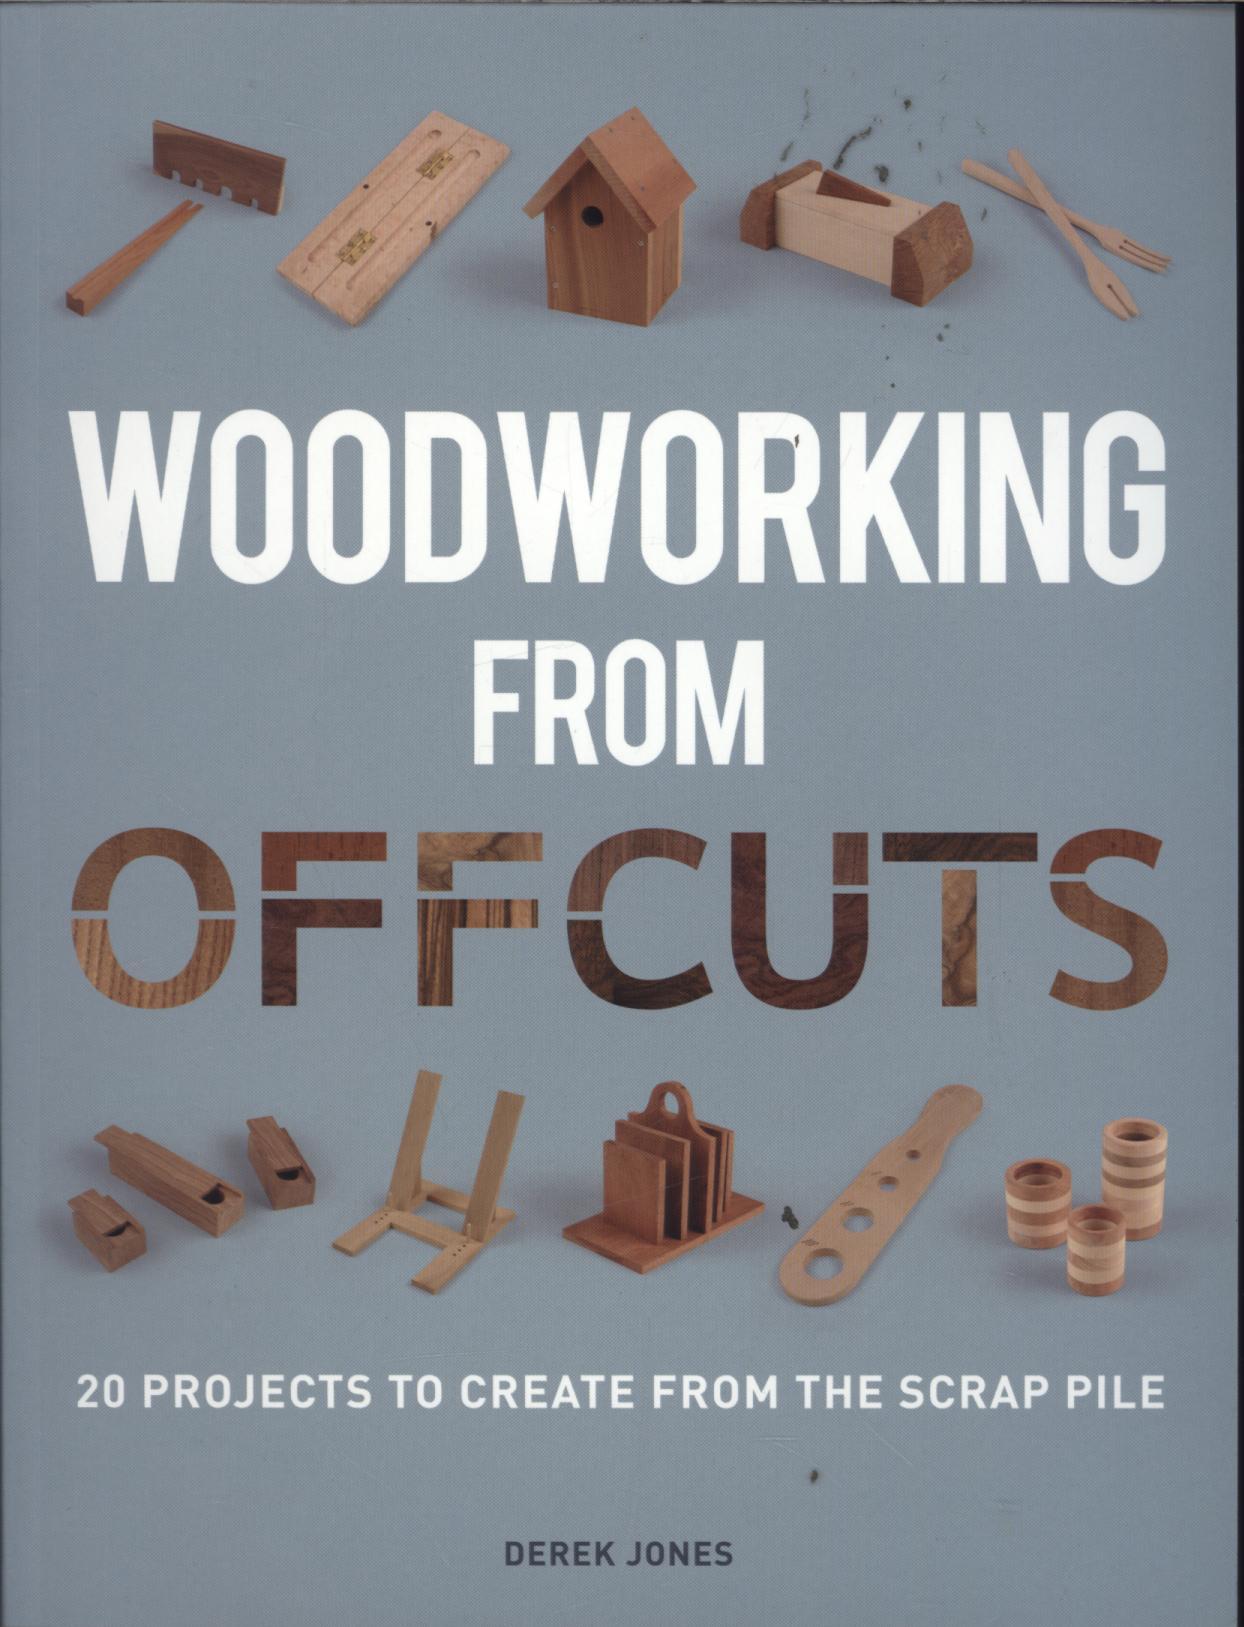 Woodworking from Offcuts - Derek Jones